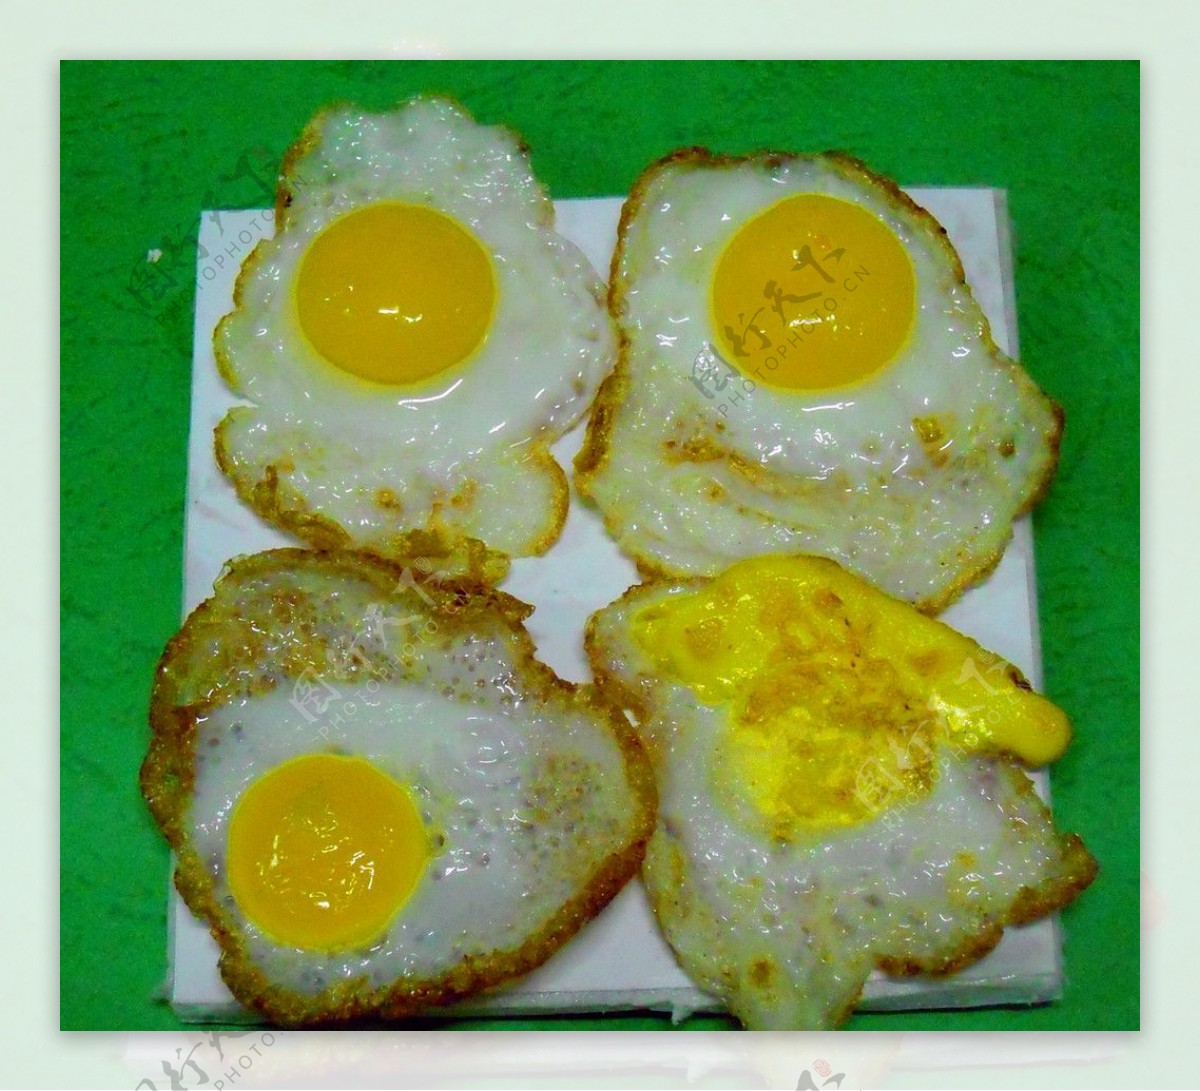 鸡蛋只会 egg ，怎么区分表达"煎蛋"、"煮蛋"、"炒蛋"、"水蒸蛋"? - 知乎